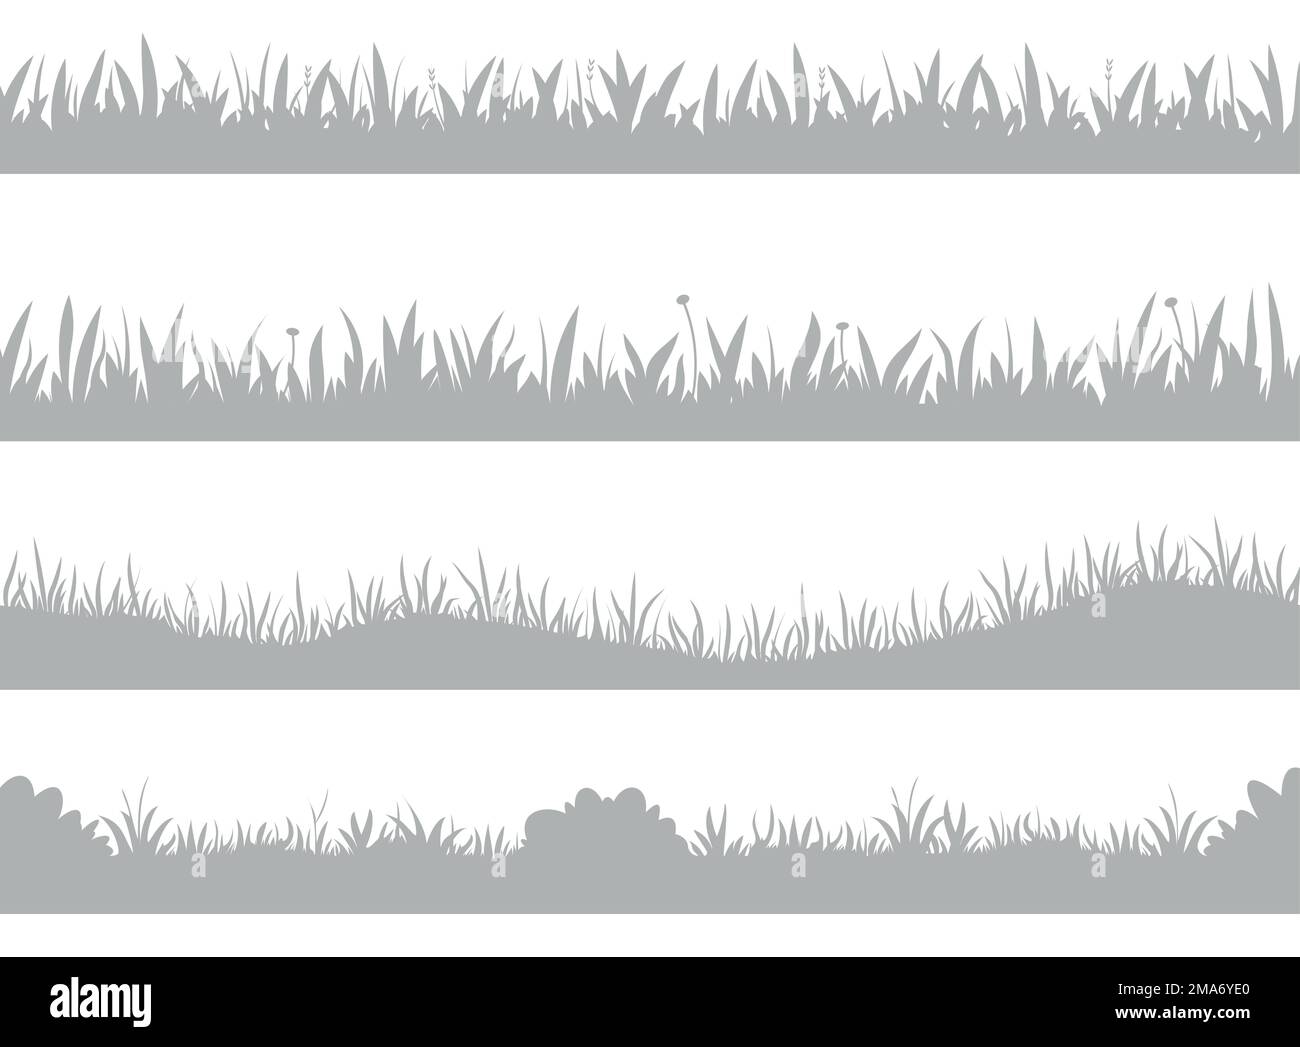 Grassilhouette. Horizontale Banner mit Wiesenrand, Rasenlandschaft mit einfarbigen Elementen, Naturblütenpanorama. Vektorsatz Stock Vektor